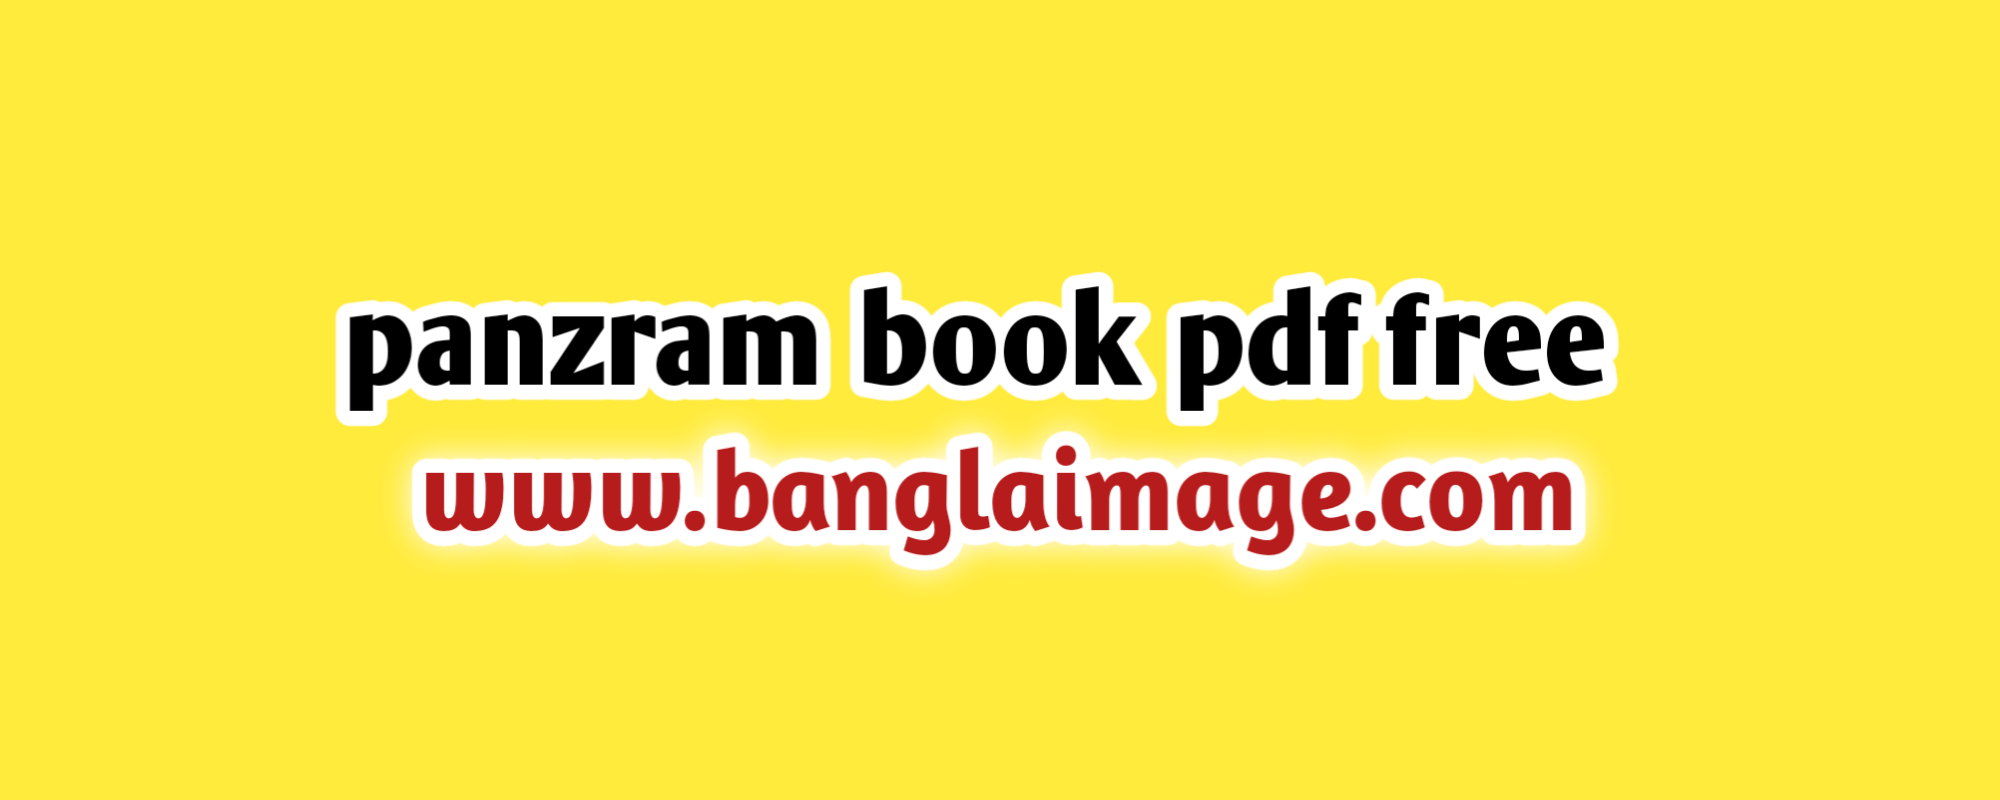 panzram book pdf free, panzram book autobiography, carl panzram book butchering humanity , the panzram book autobiography